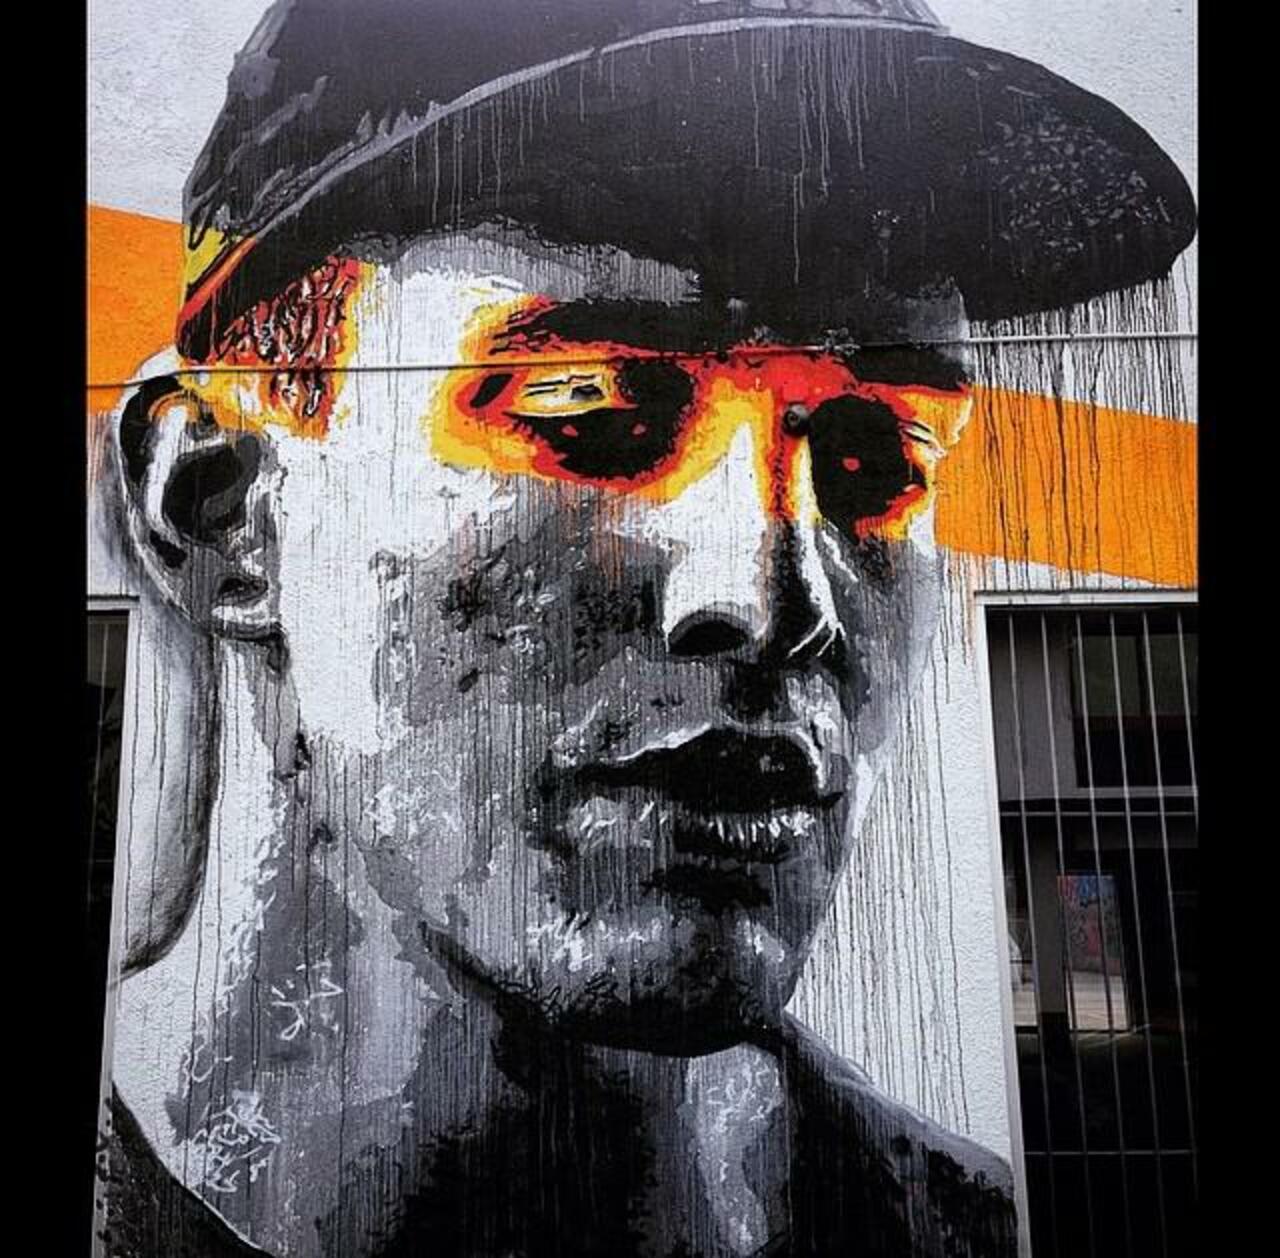 Artist Nils Westergard Street Art portrait in Miami 

#art #graffiti #mural #streetart http://t.co/QXHi4w06Yc